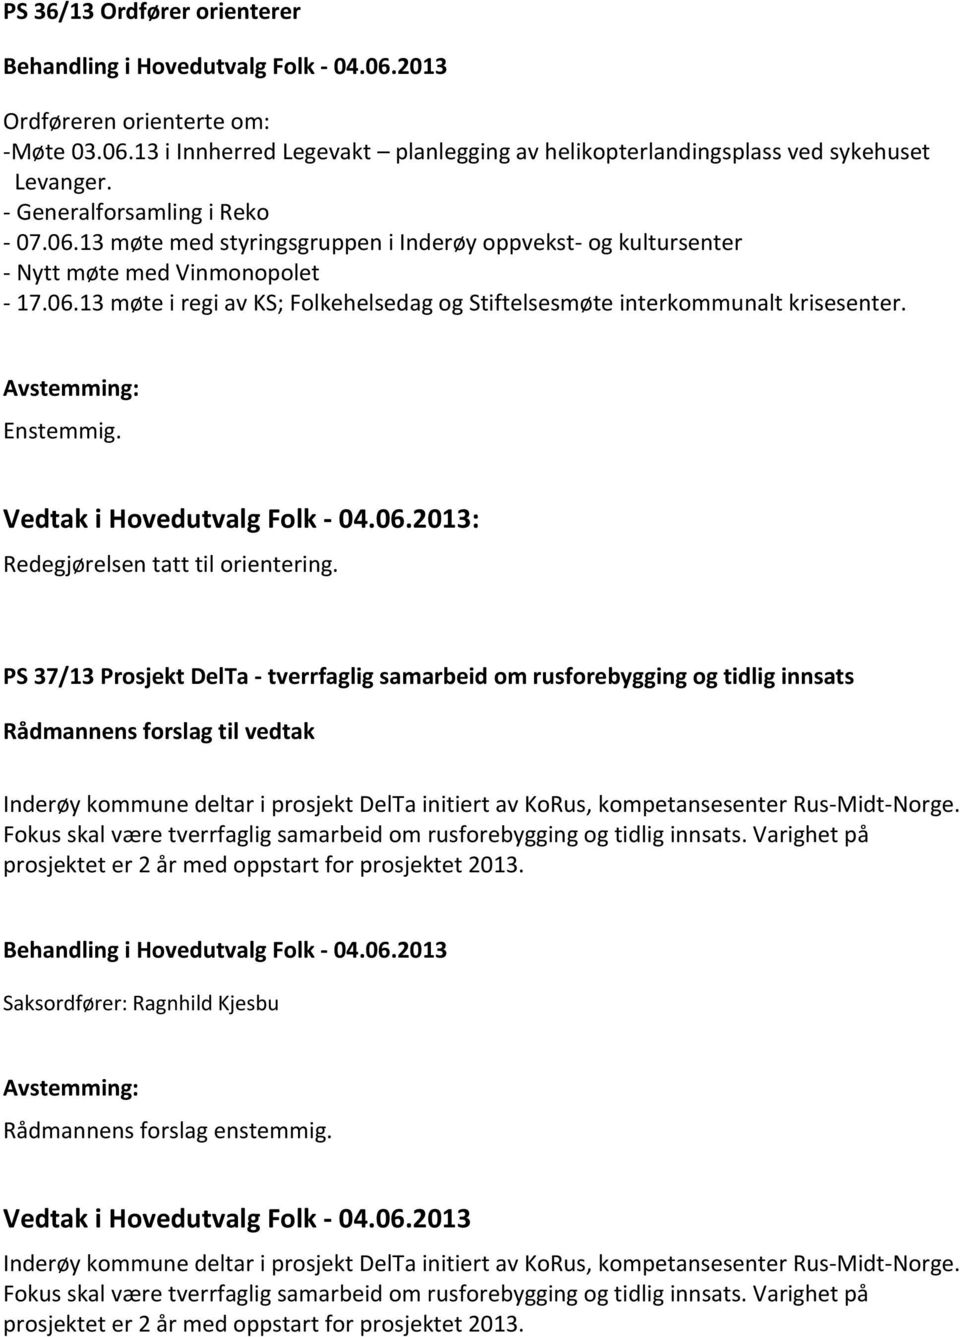 Enstemmig. Vedtak i Hovedutvalg Folk - 04.06.2013: Redegjørelsen tatt til orientering.